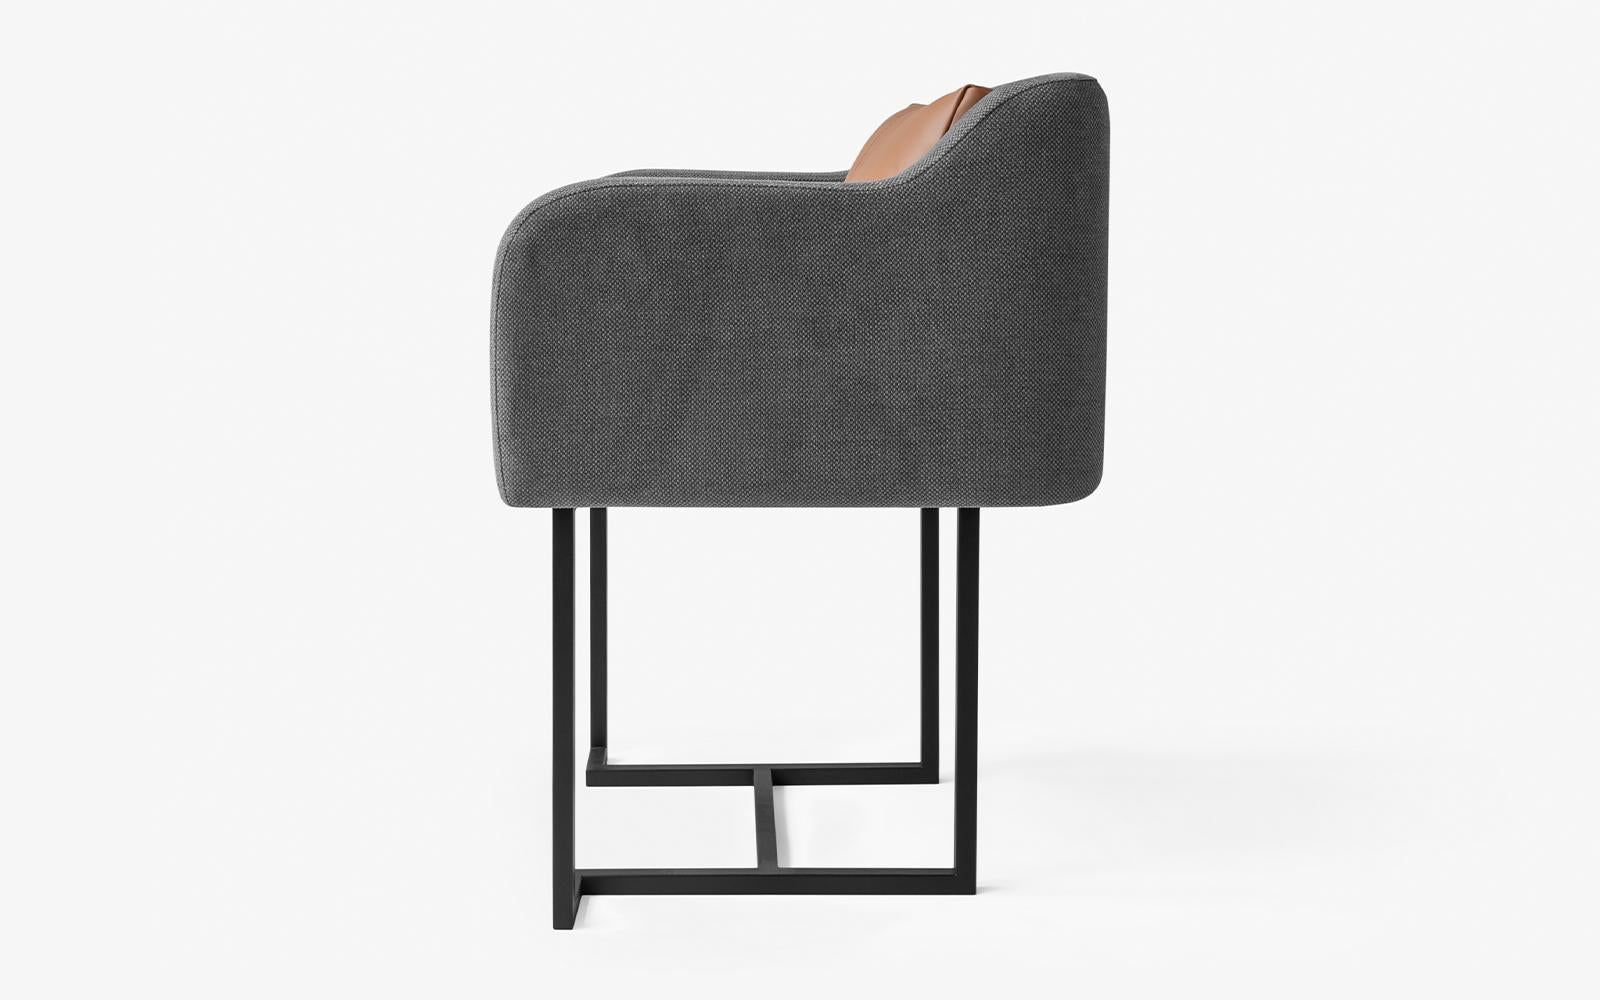 La chaise Papillonne en métal noir s'invite dans votre salon grâce à ses détails, alliant confort et élégance.

Mesures : Longueur : 23,6'' / profondeur : 19,6'' / hauteur : 29,5'' / hauteur du siège : 19,6''
Poids : 12,4 kg
Matériaux : métal